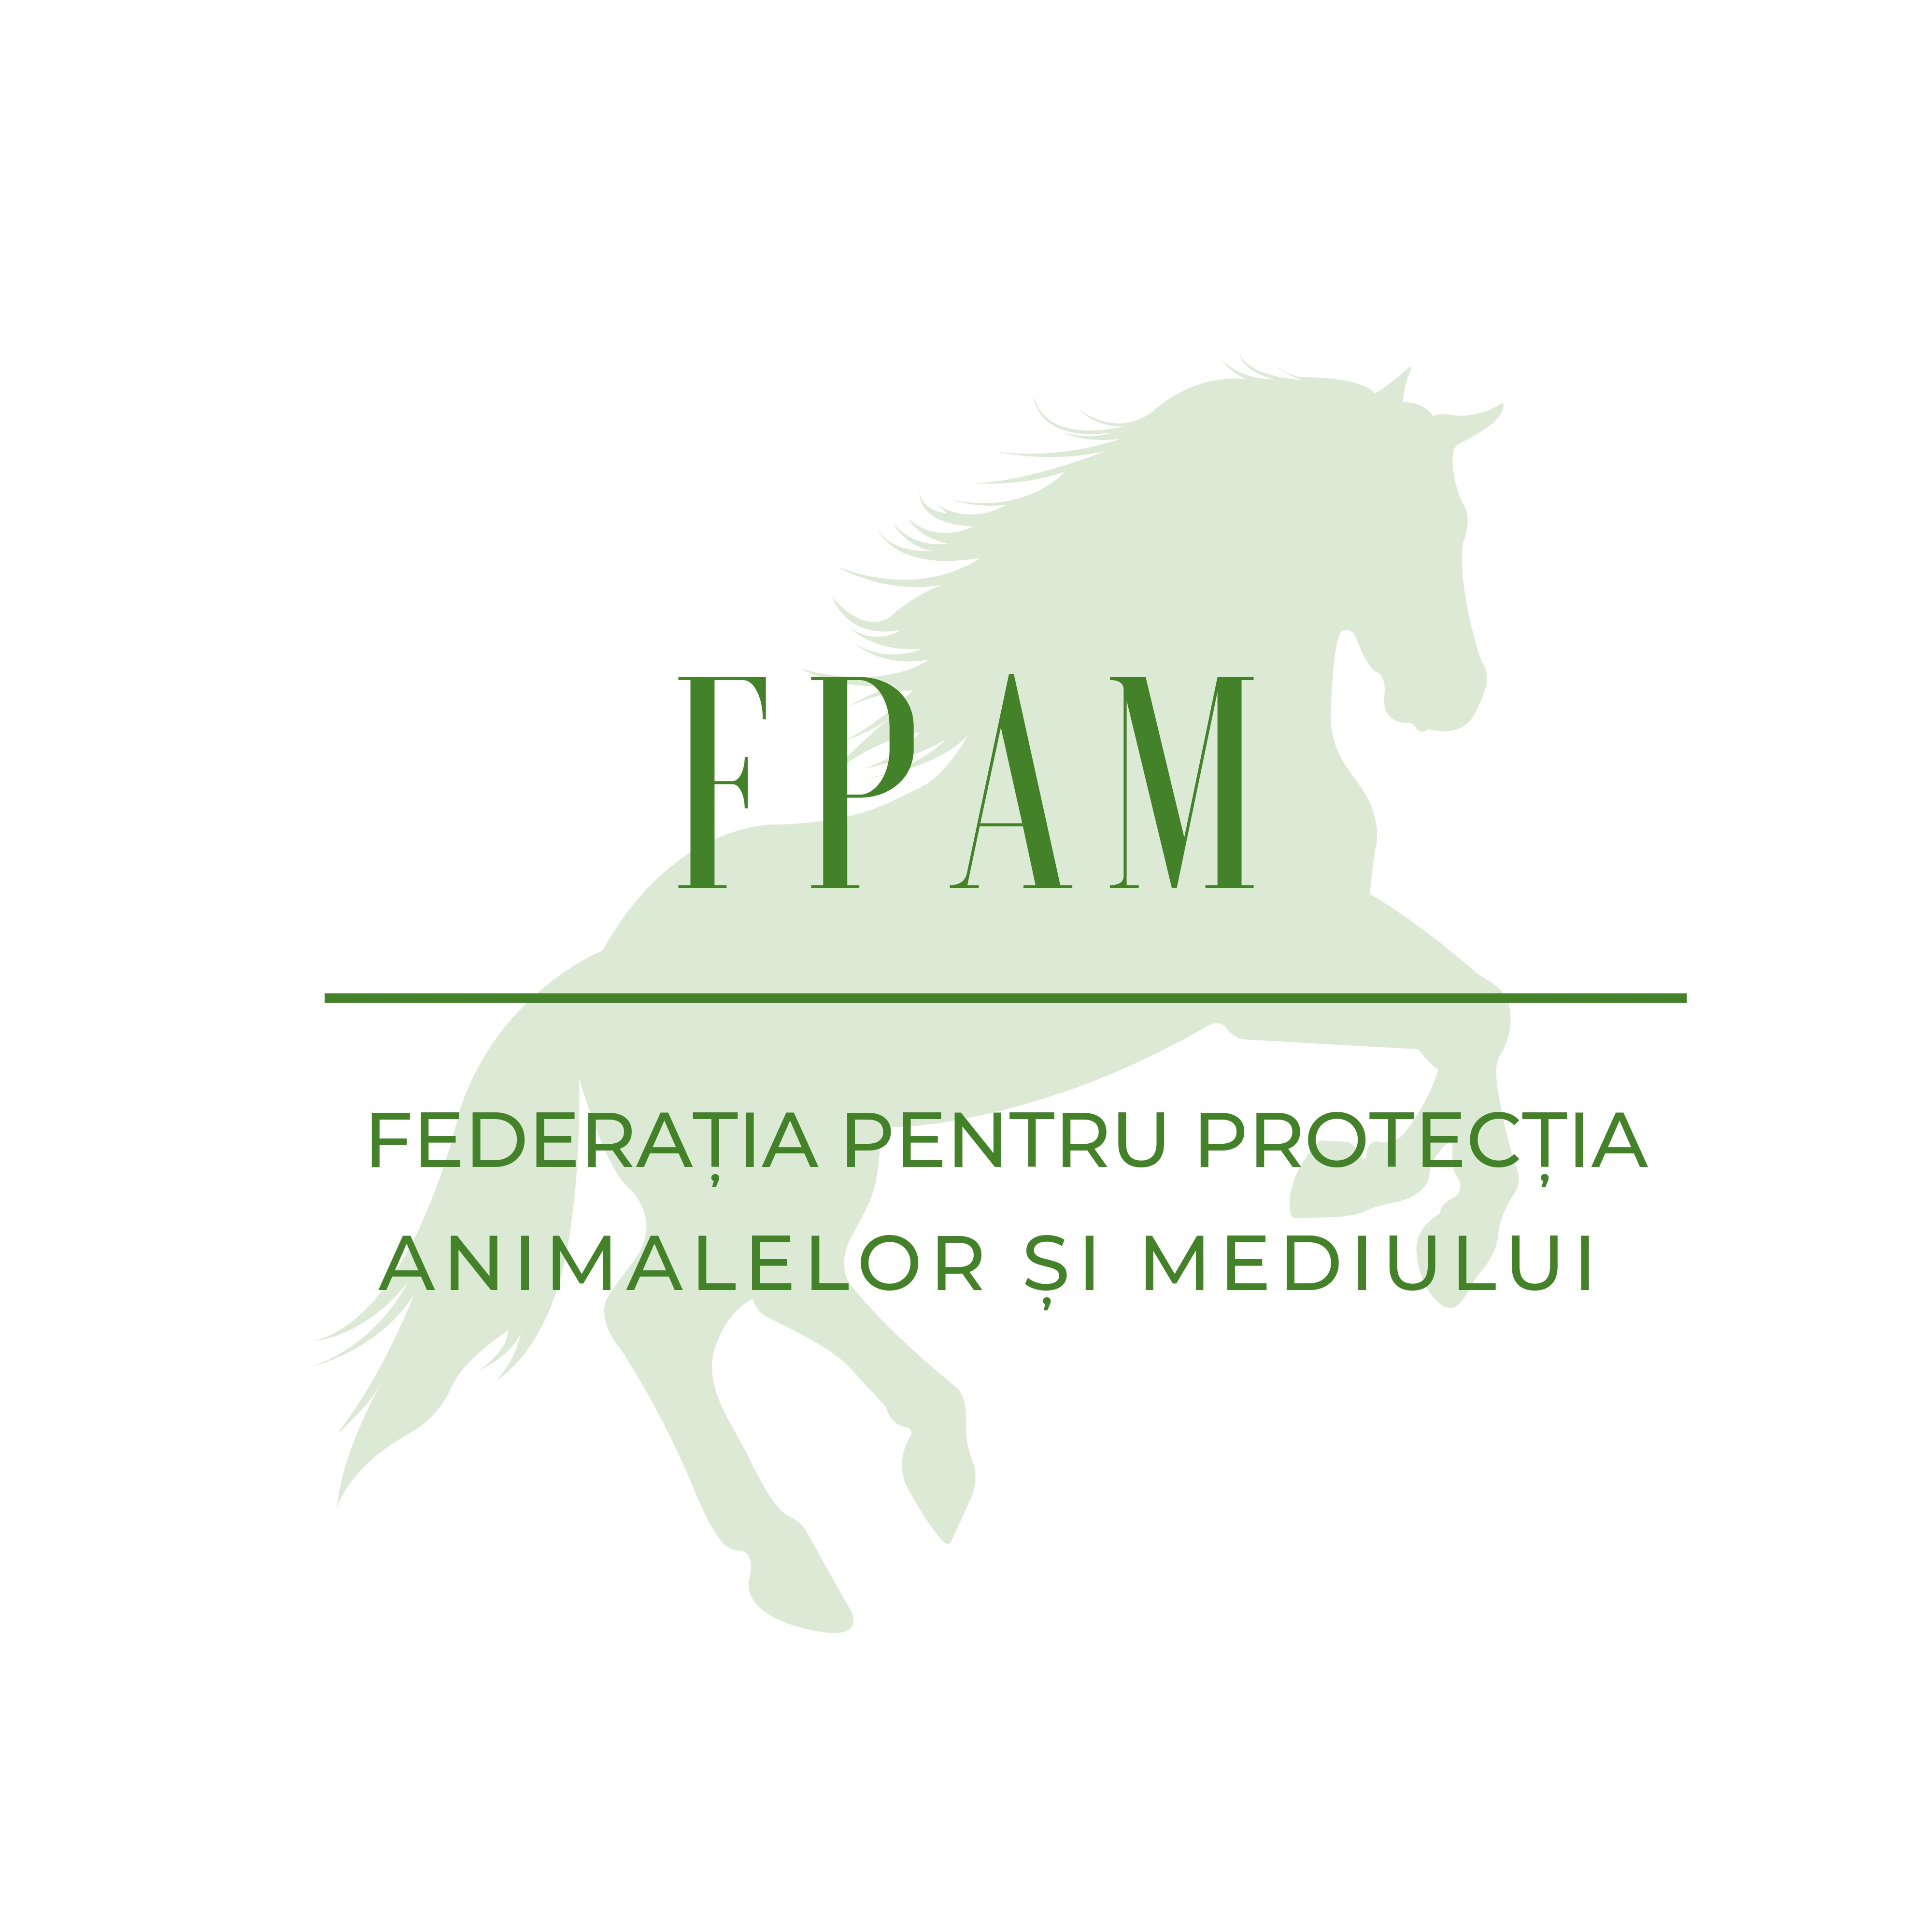 Federatia pentru Protectia Animalelor si Mediului - Romania logo